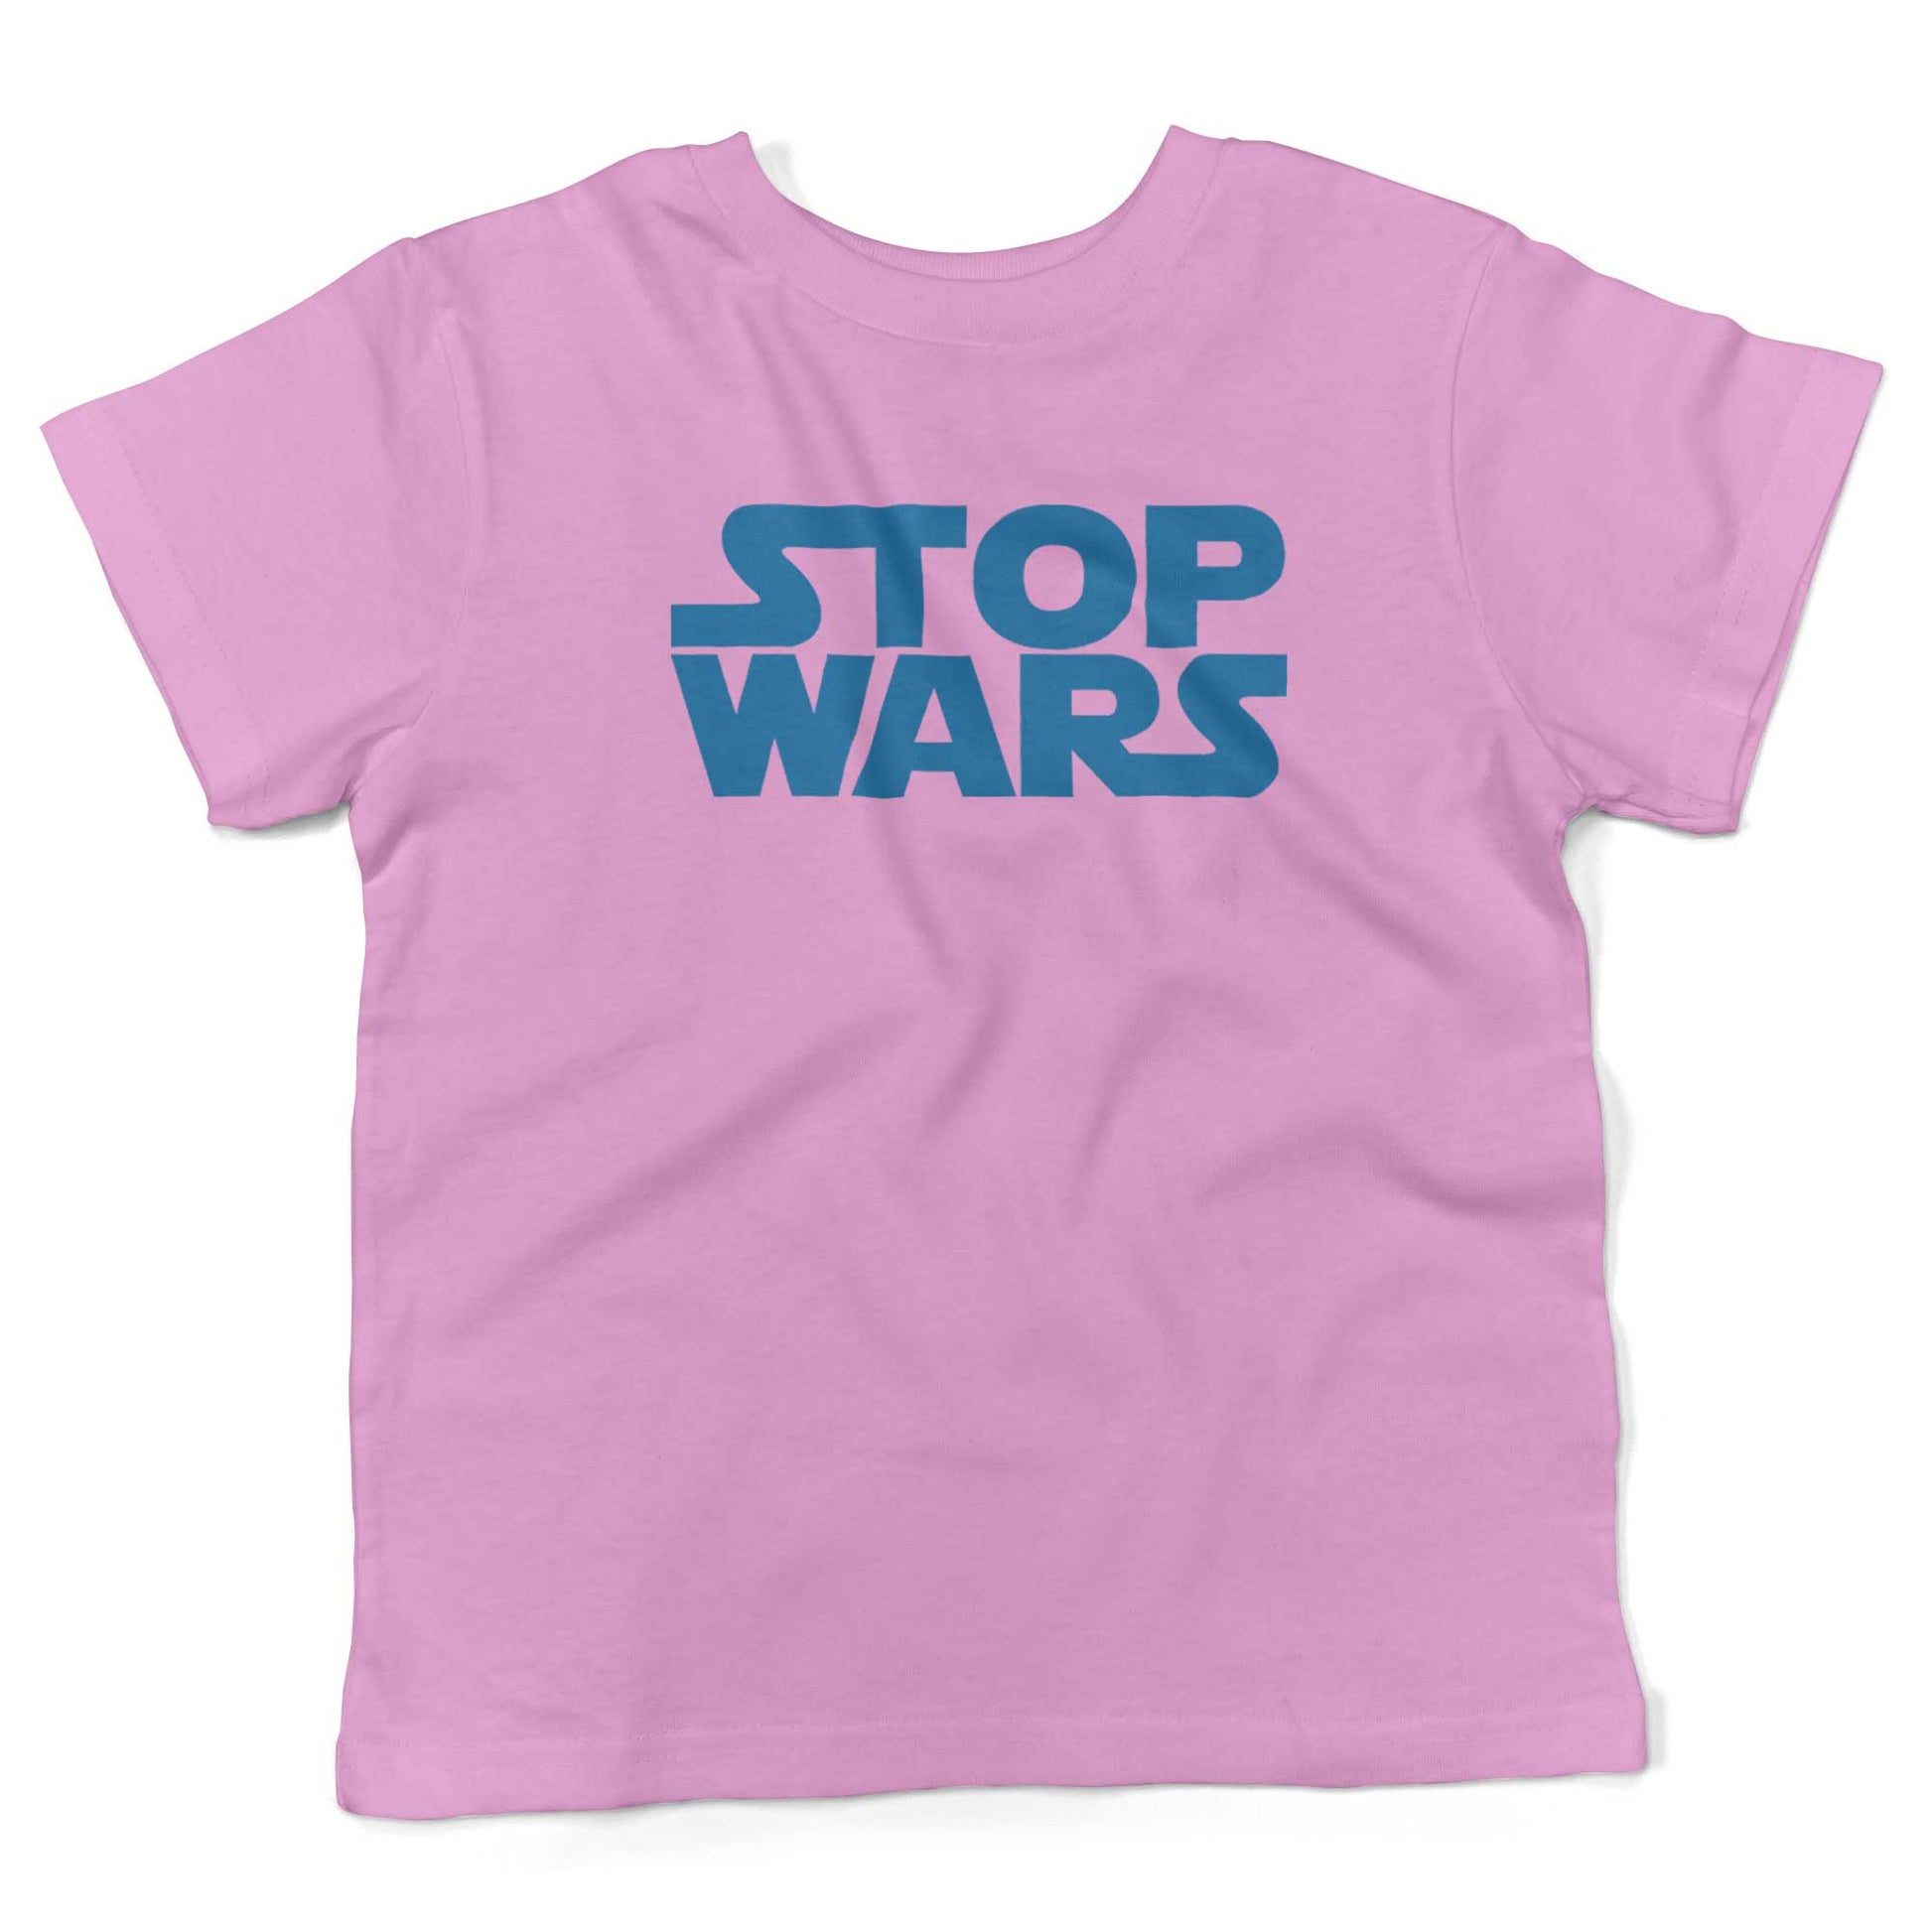 STOP WARS Toddler Shirt-Organic Pink-2T